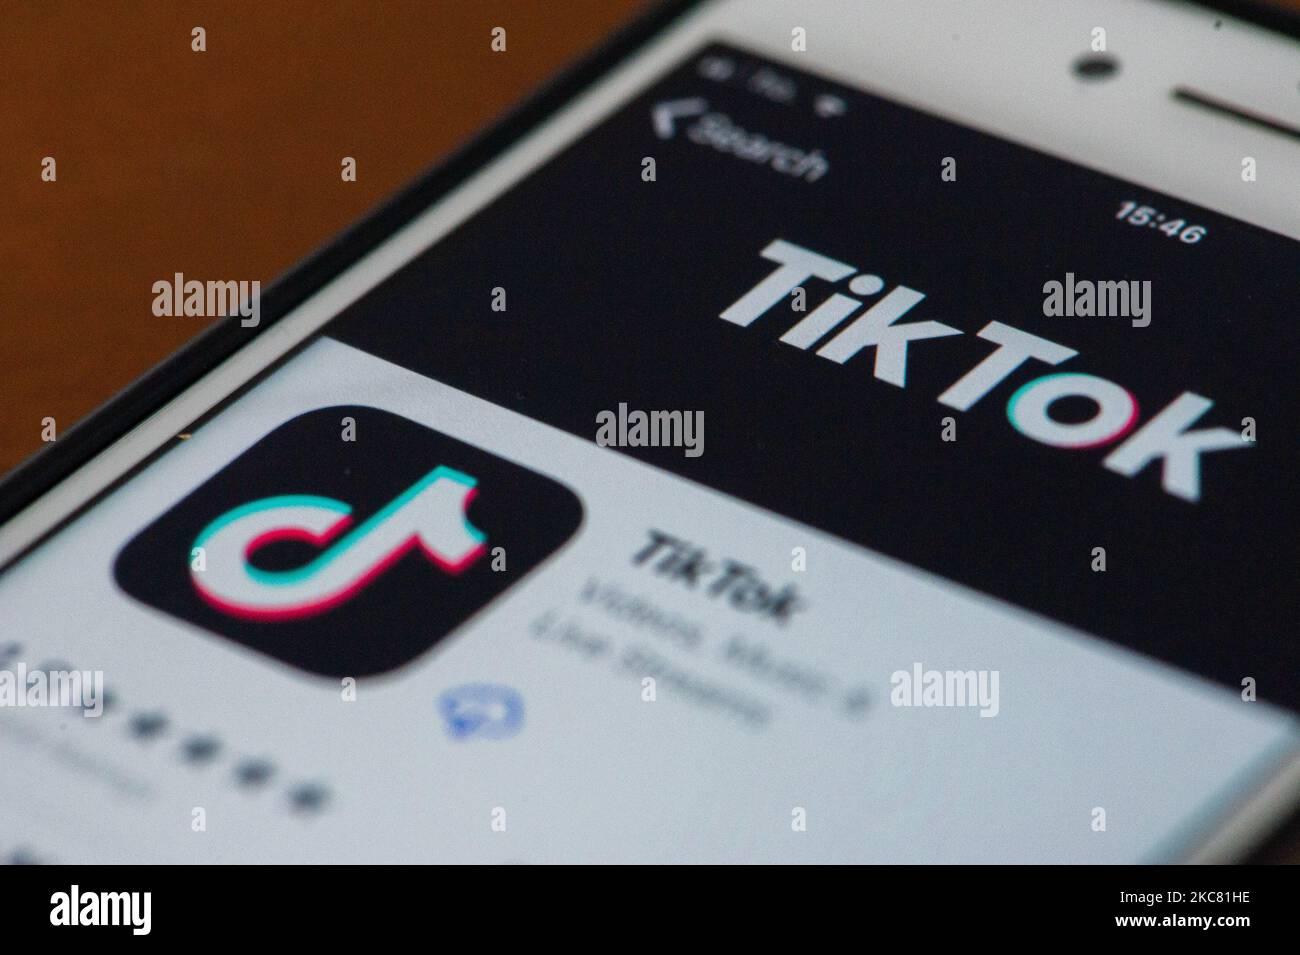 Un utilisateur qui ouvre TikTok sur son iPhone à l'Aquila, en Italie, sur 23 janvier 2021. Le garant de la vie privée a commandé le bloc pour les utilisateurs de TikTok sans avoir déterminé l'âge. (Photo d'illustration par Lorenzo Di Cola/NurPhoto) Banque D'Images